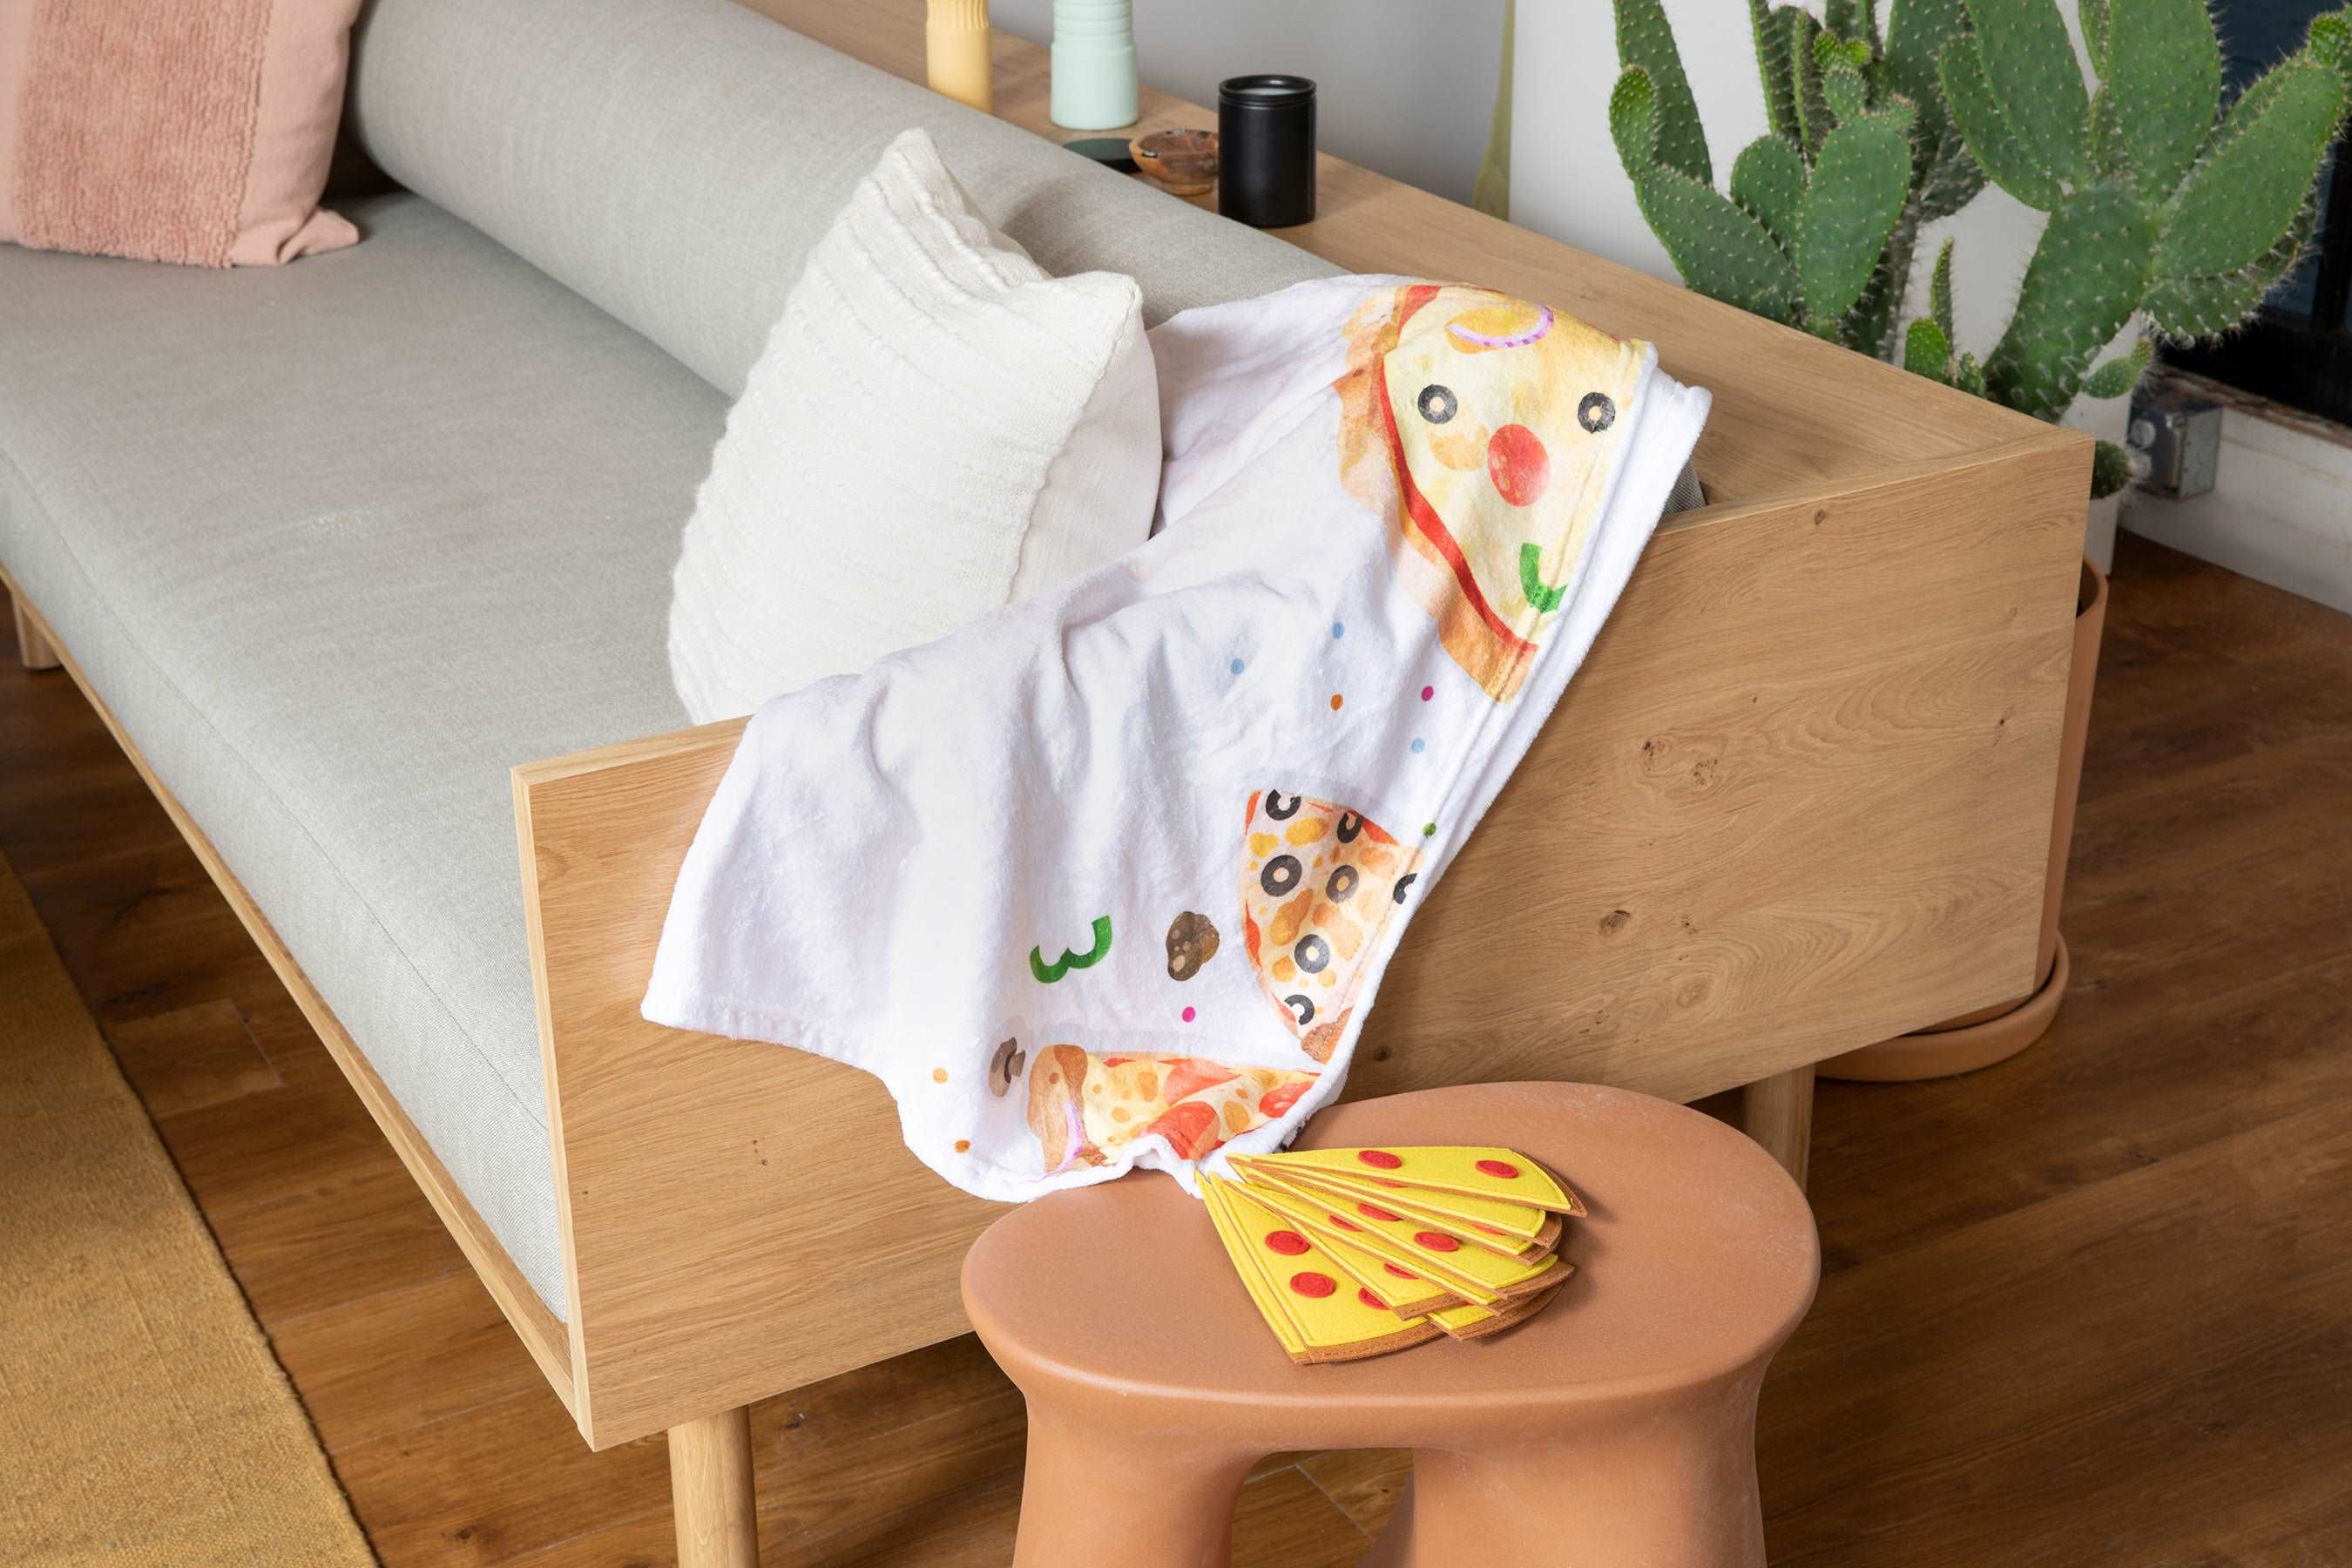 monthly milestone baby blanket - pizza theme